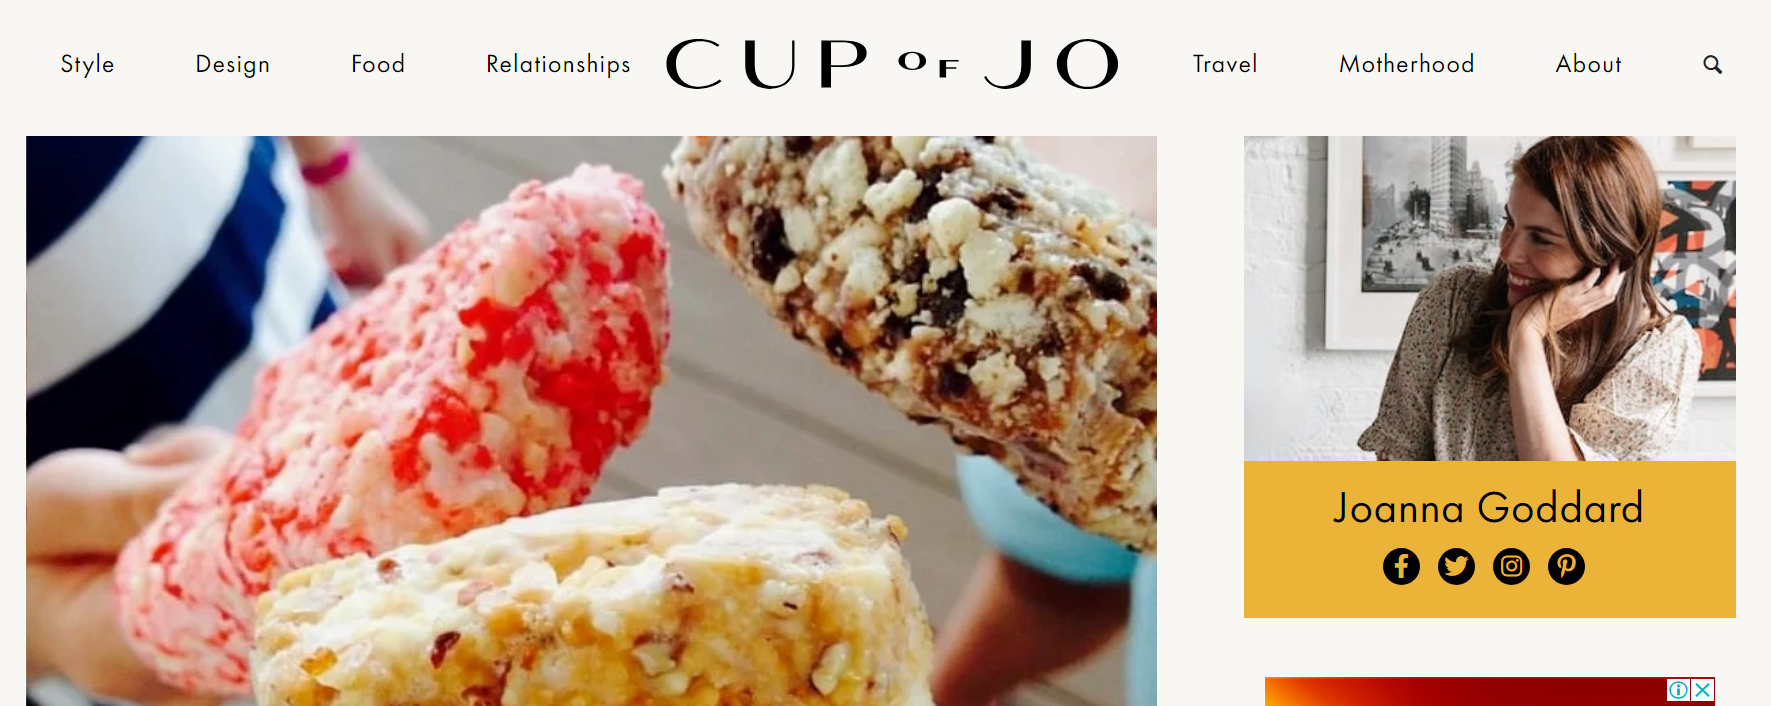 Site Web du blog de style de vie Cup of Jo